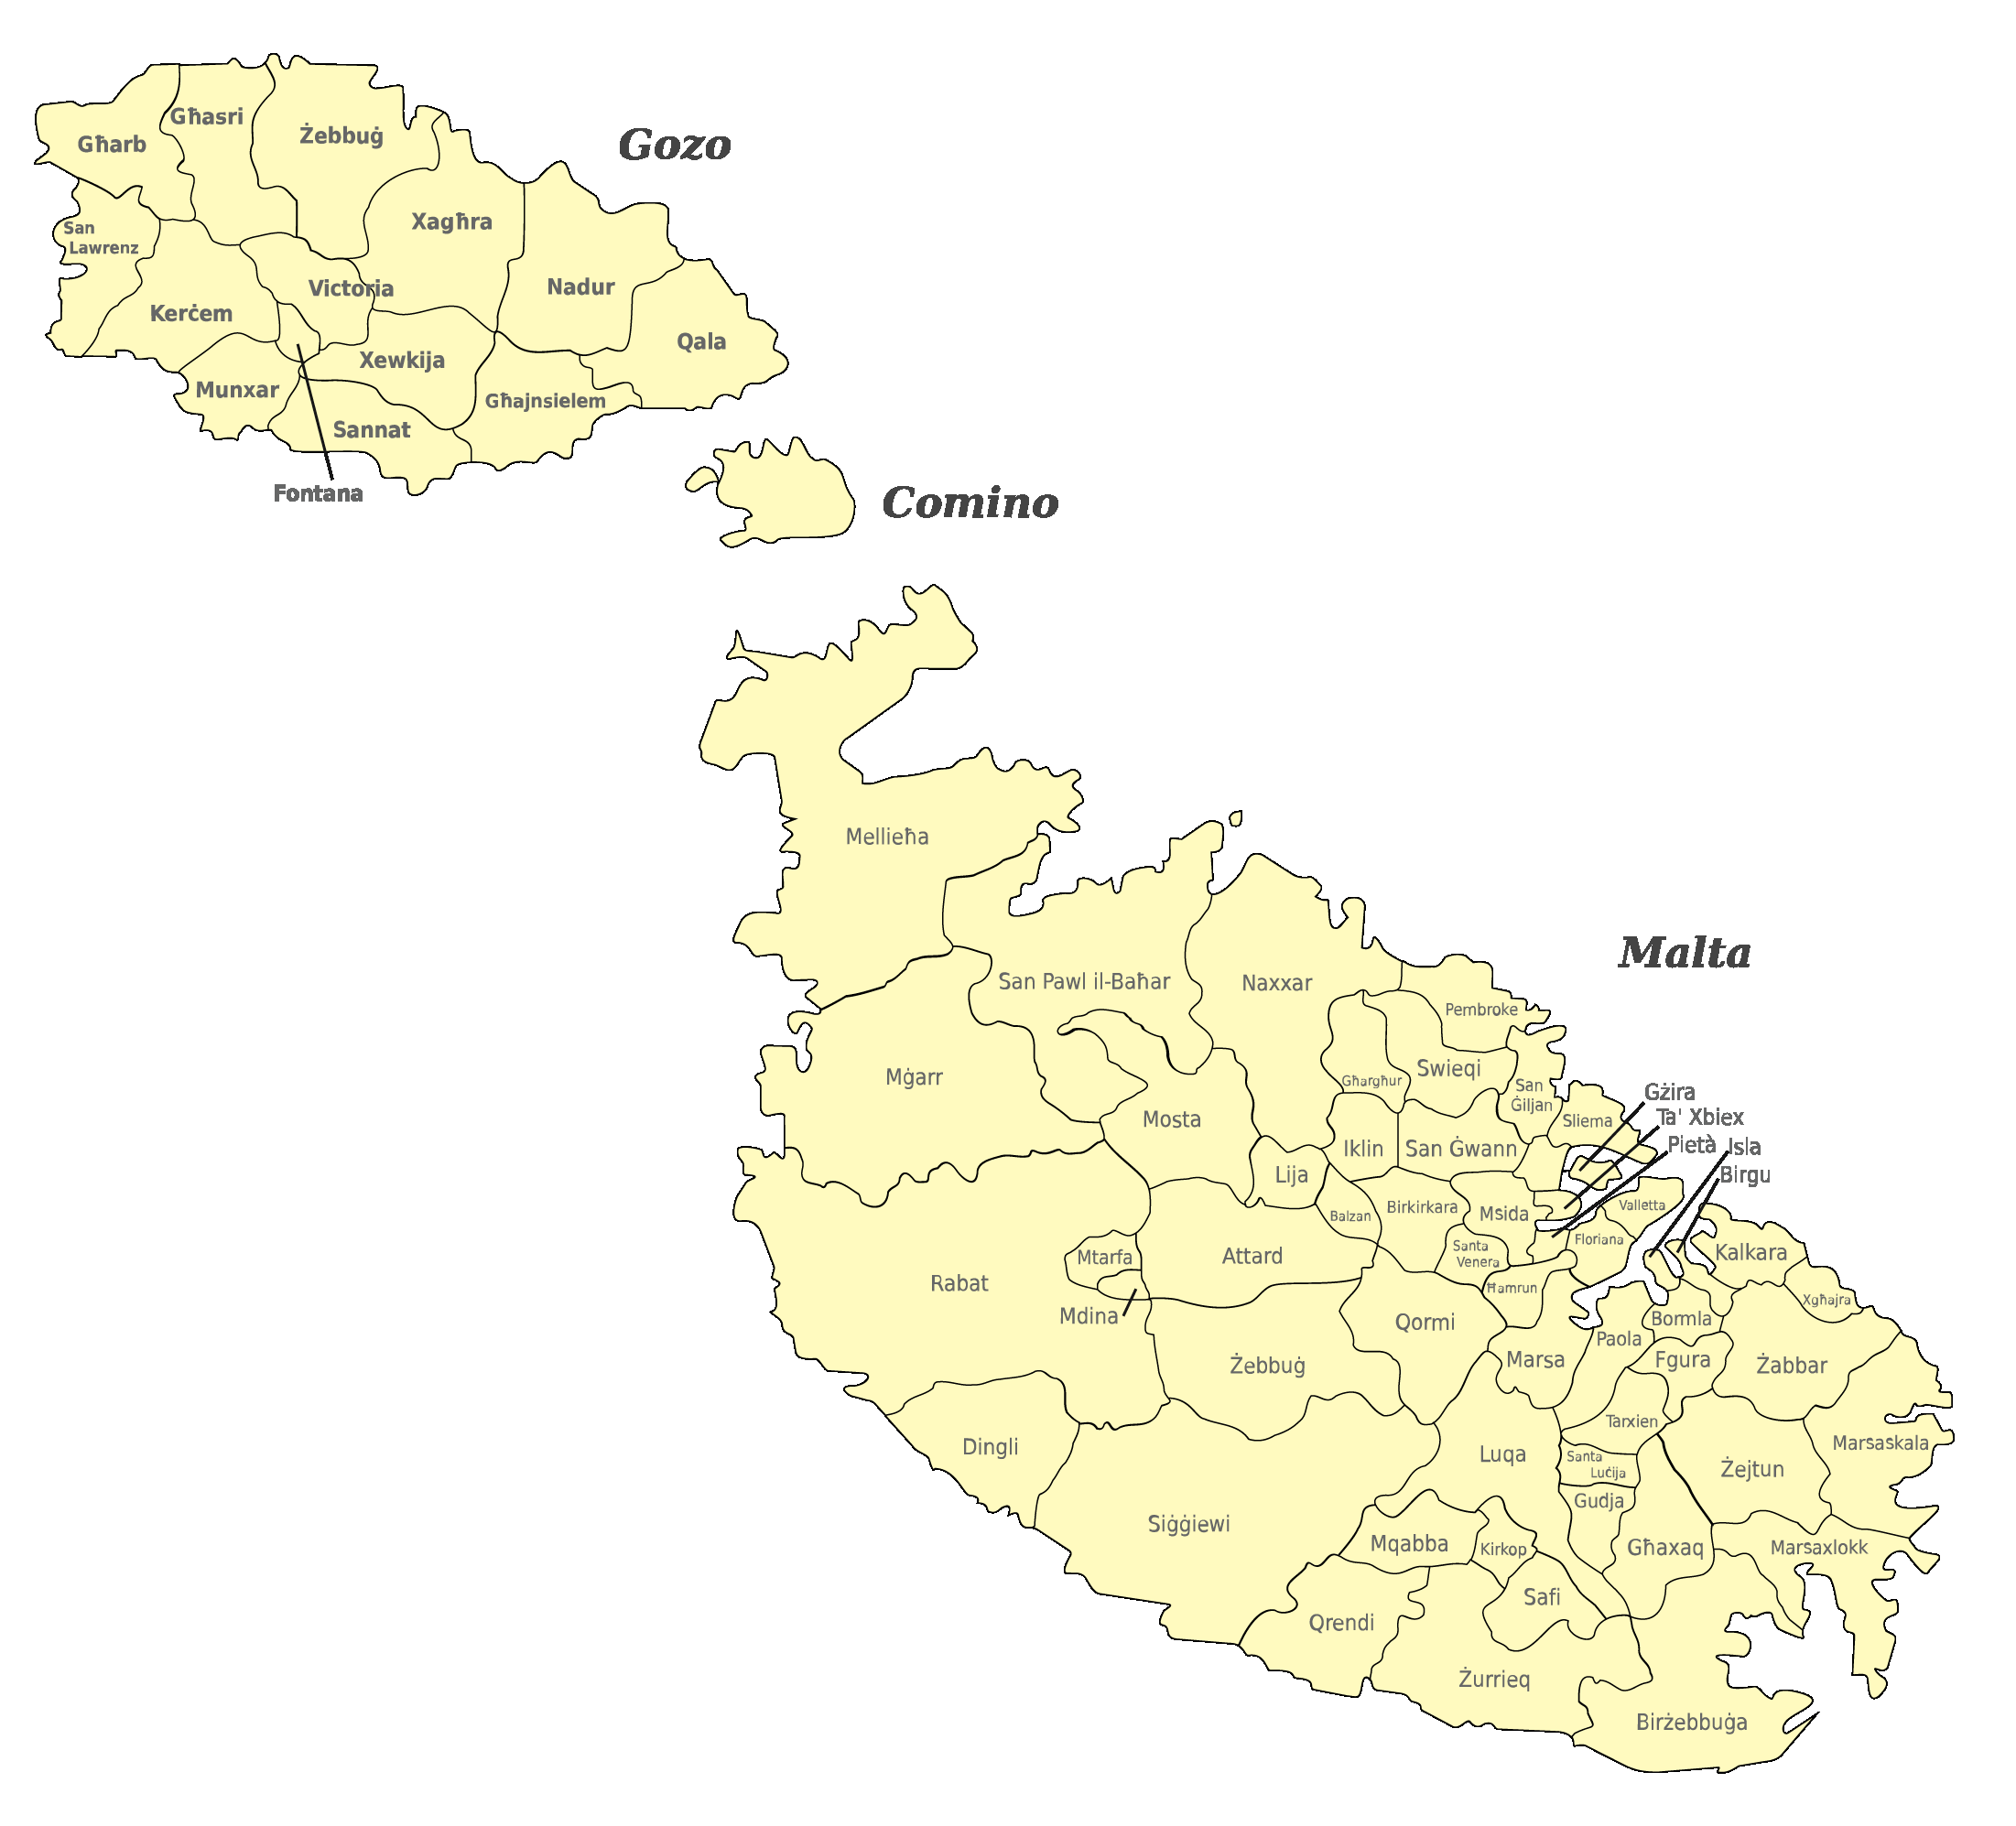 Malta Karte nach Regionen gegliedert